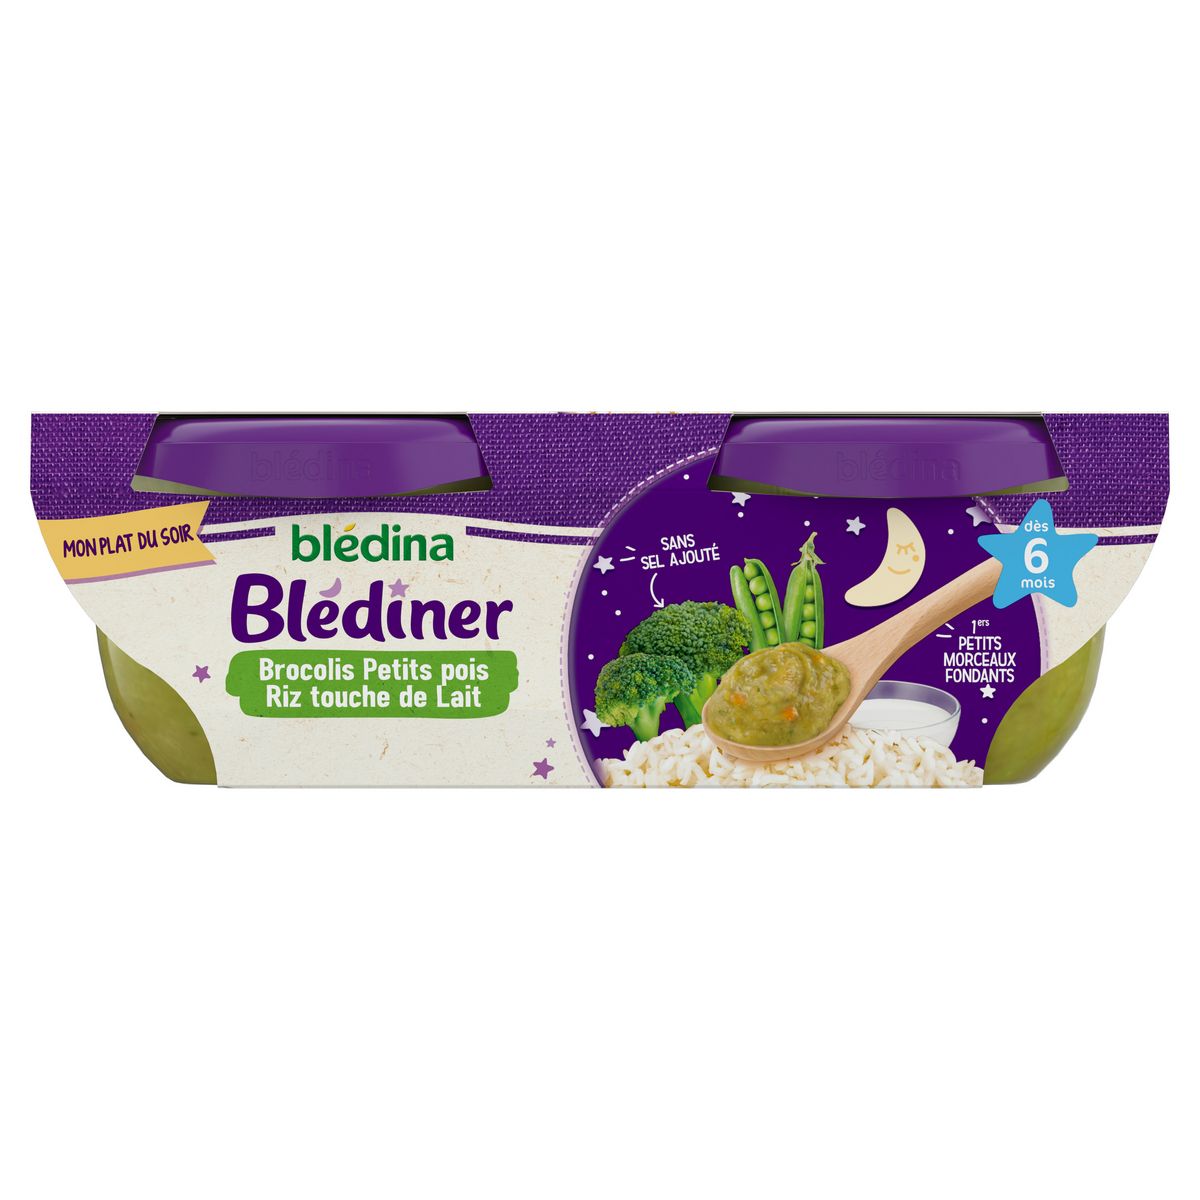 BLEDINA Blédiner bol brocolis petits pois riz et touche de lait dès 6 mois 2x200g